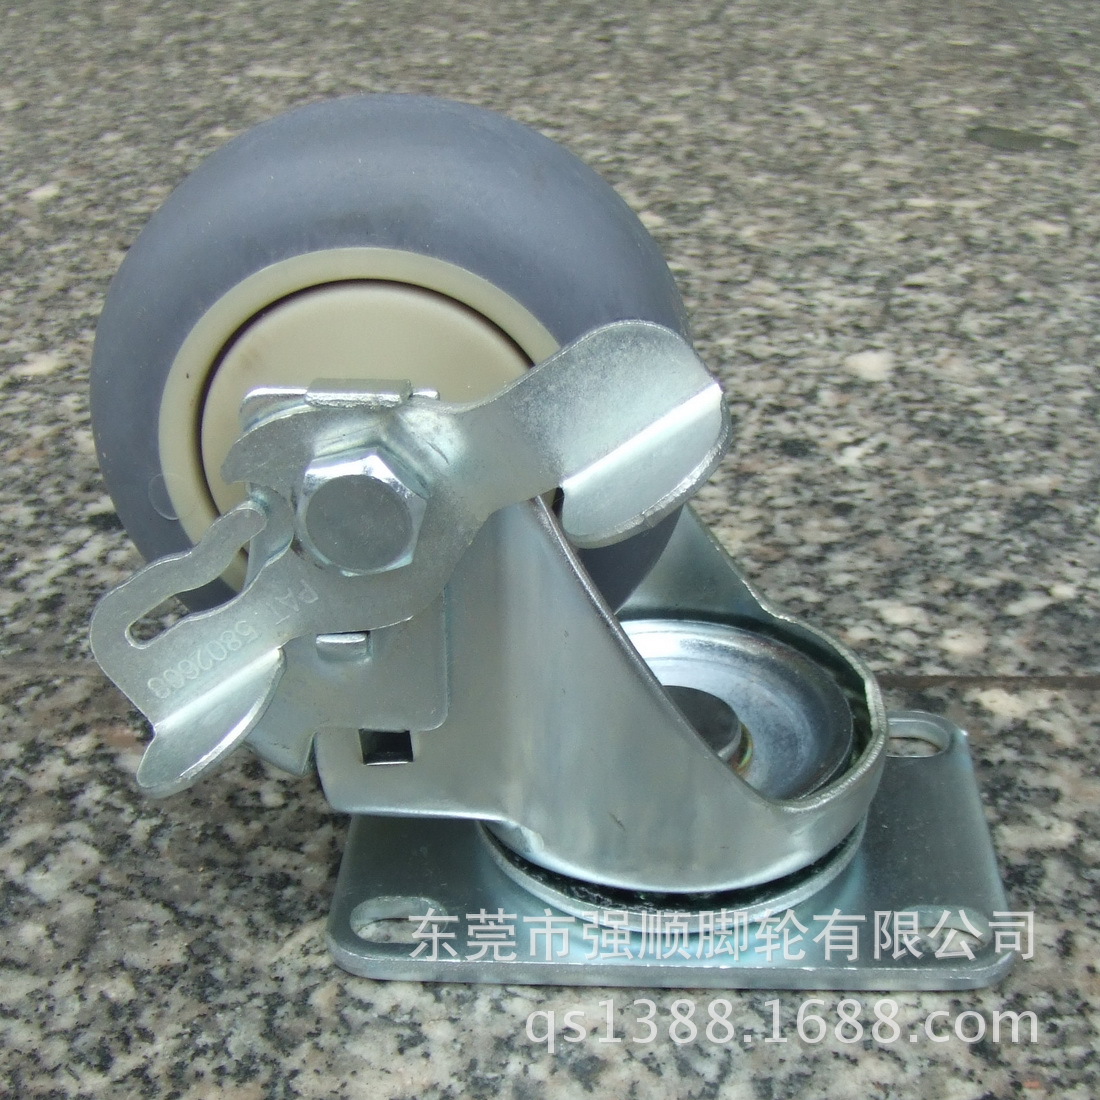 佳威工业脚轮20系列-5寸手推车专用消音人造胶轮万向轮示例图8